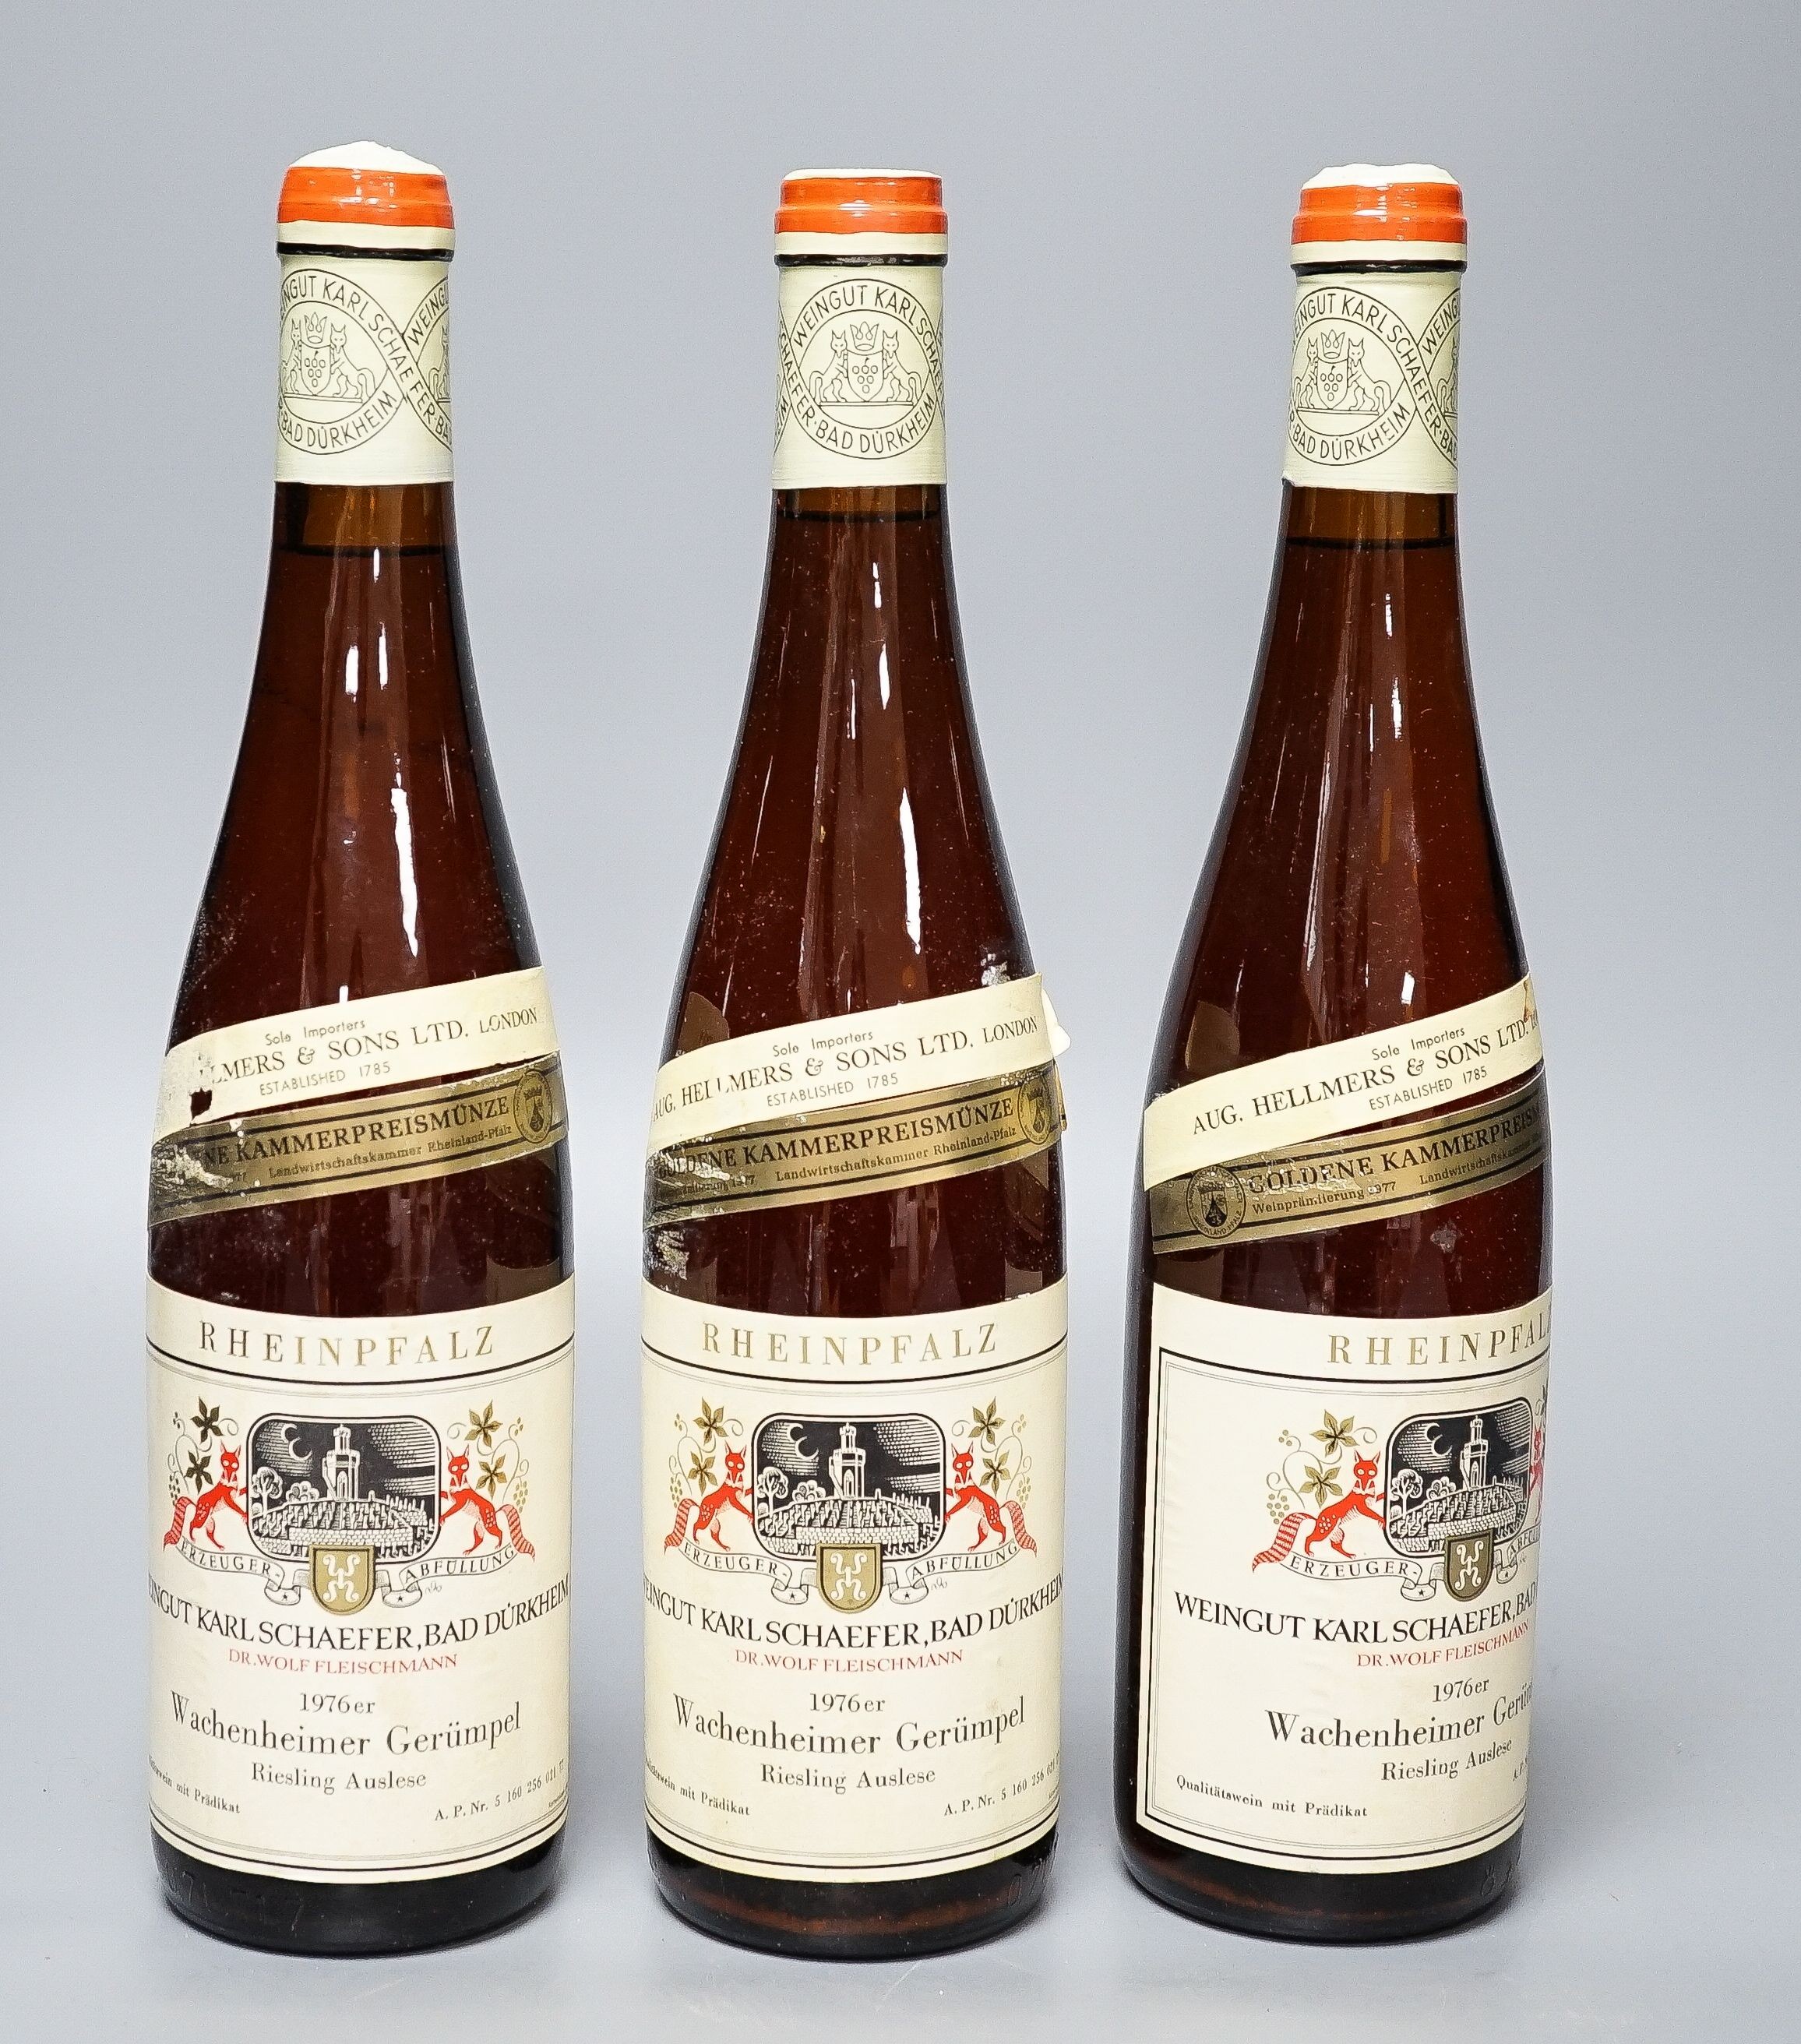 Six bottles of Weingut Karl Schaefer Durkheim Wachenheimer Gerumpel Riesling Aulese-Rheinpfalz, 1976, 75c.